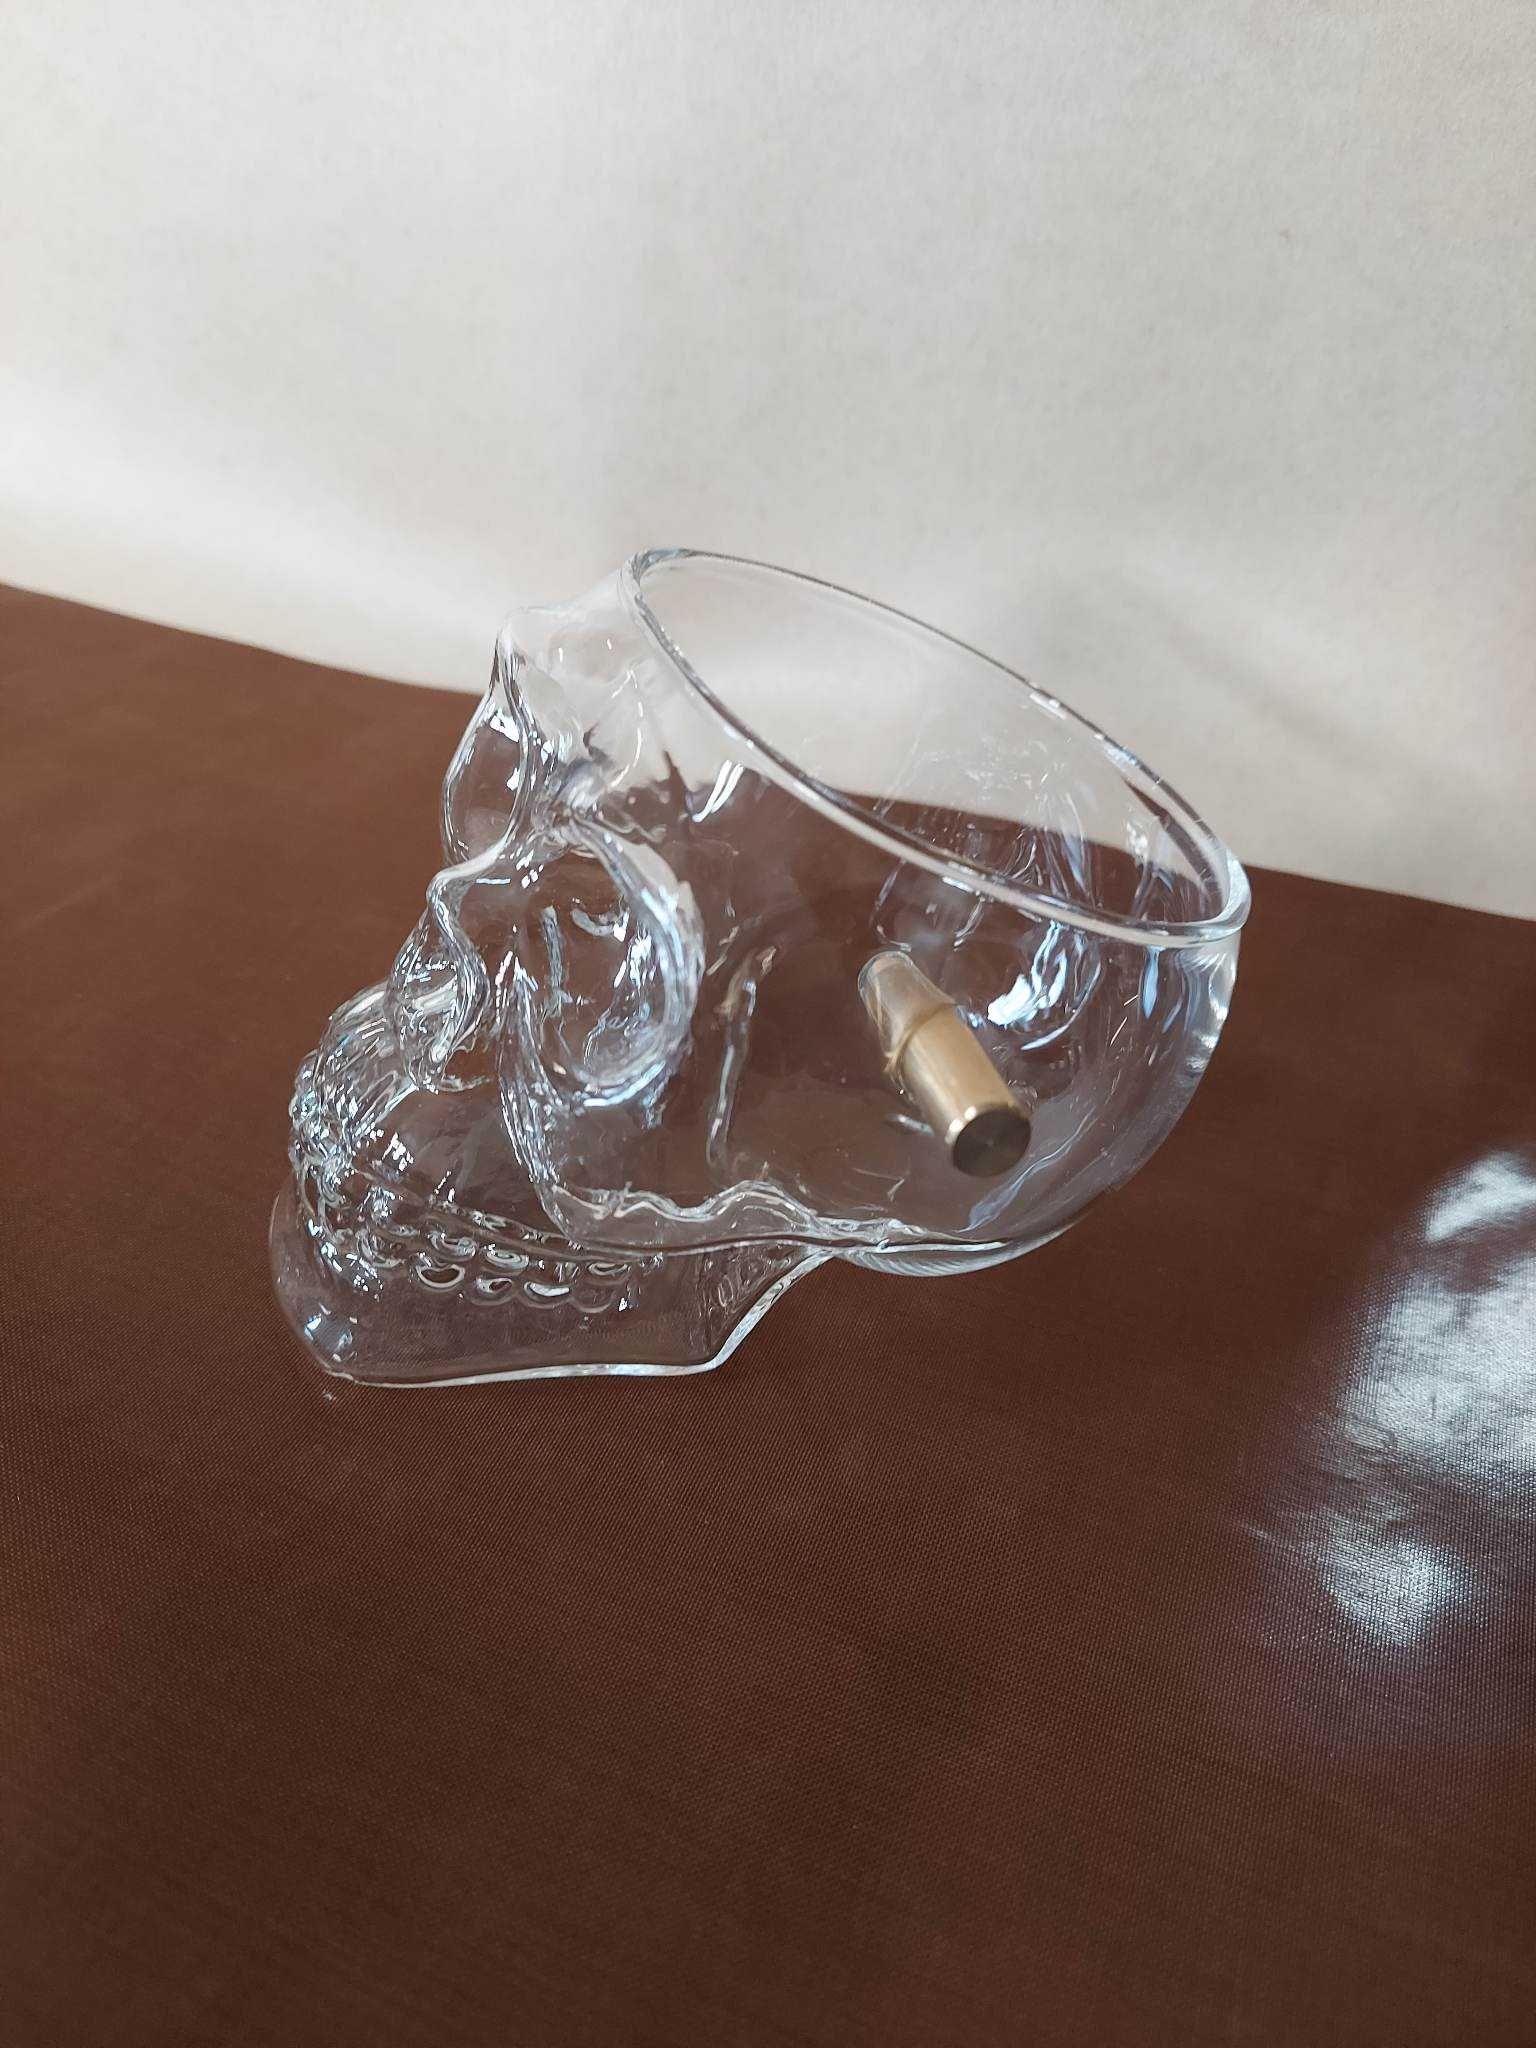 Szklanka czaszka nabój gadżet prezent whisky szkło pocisk 340ml NOWA